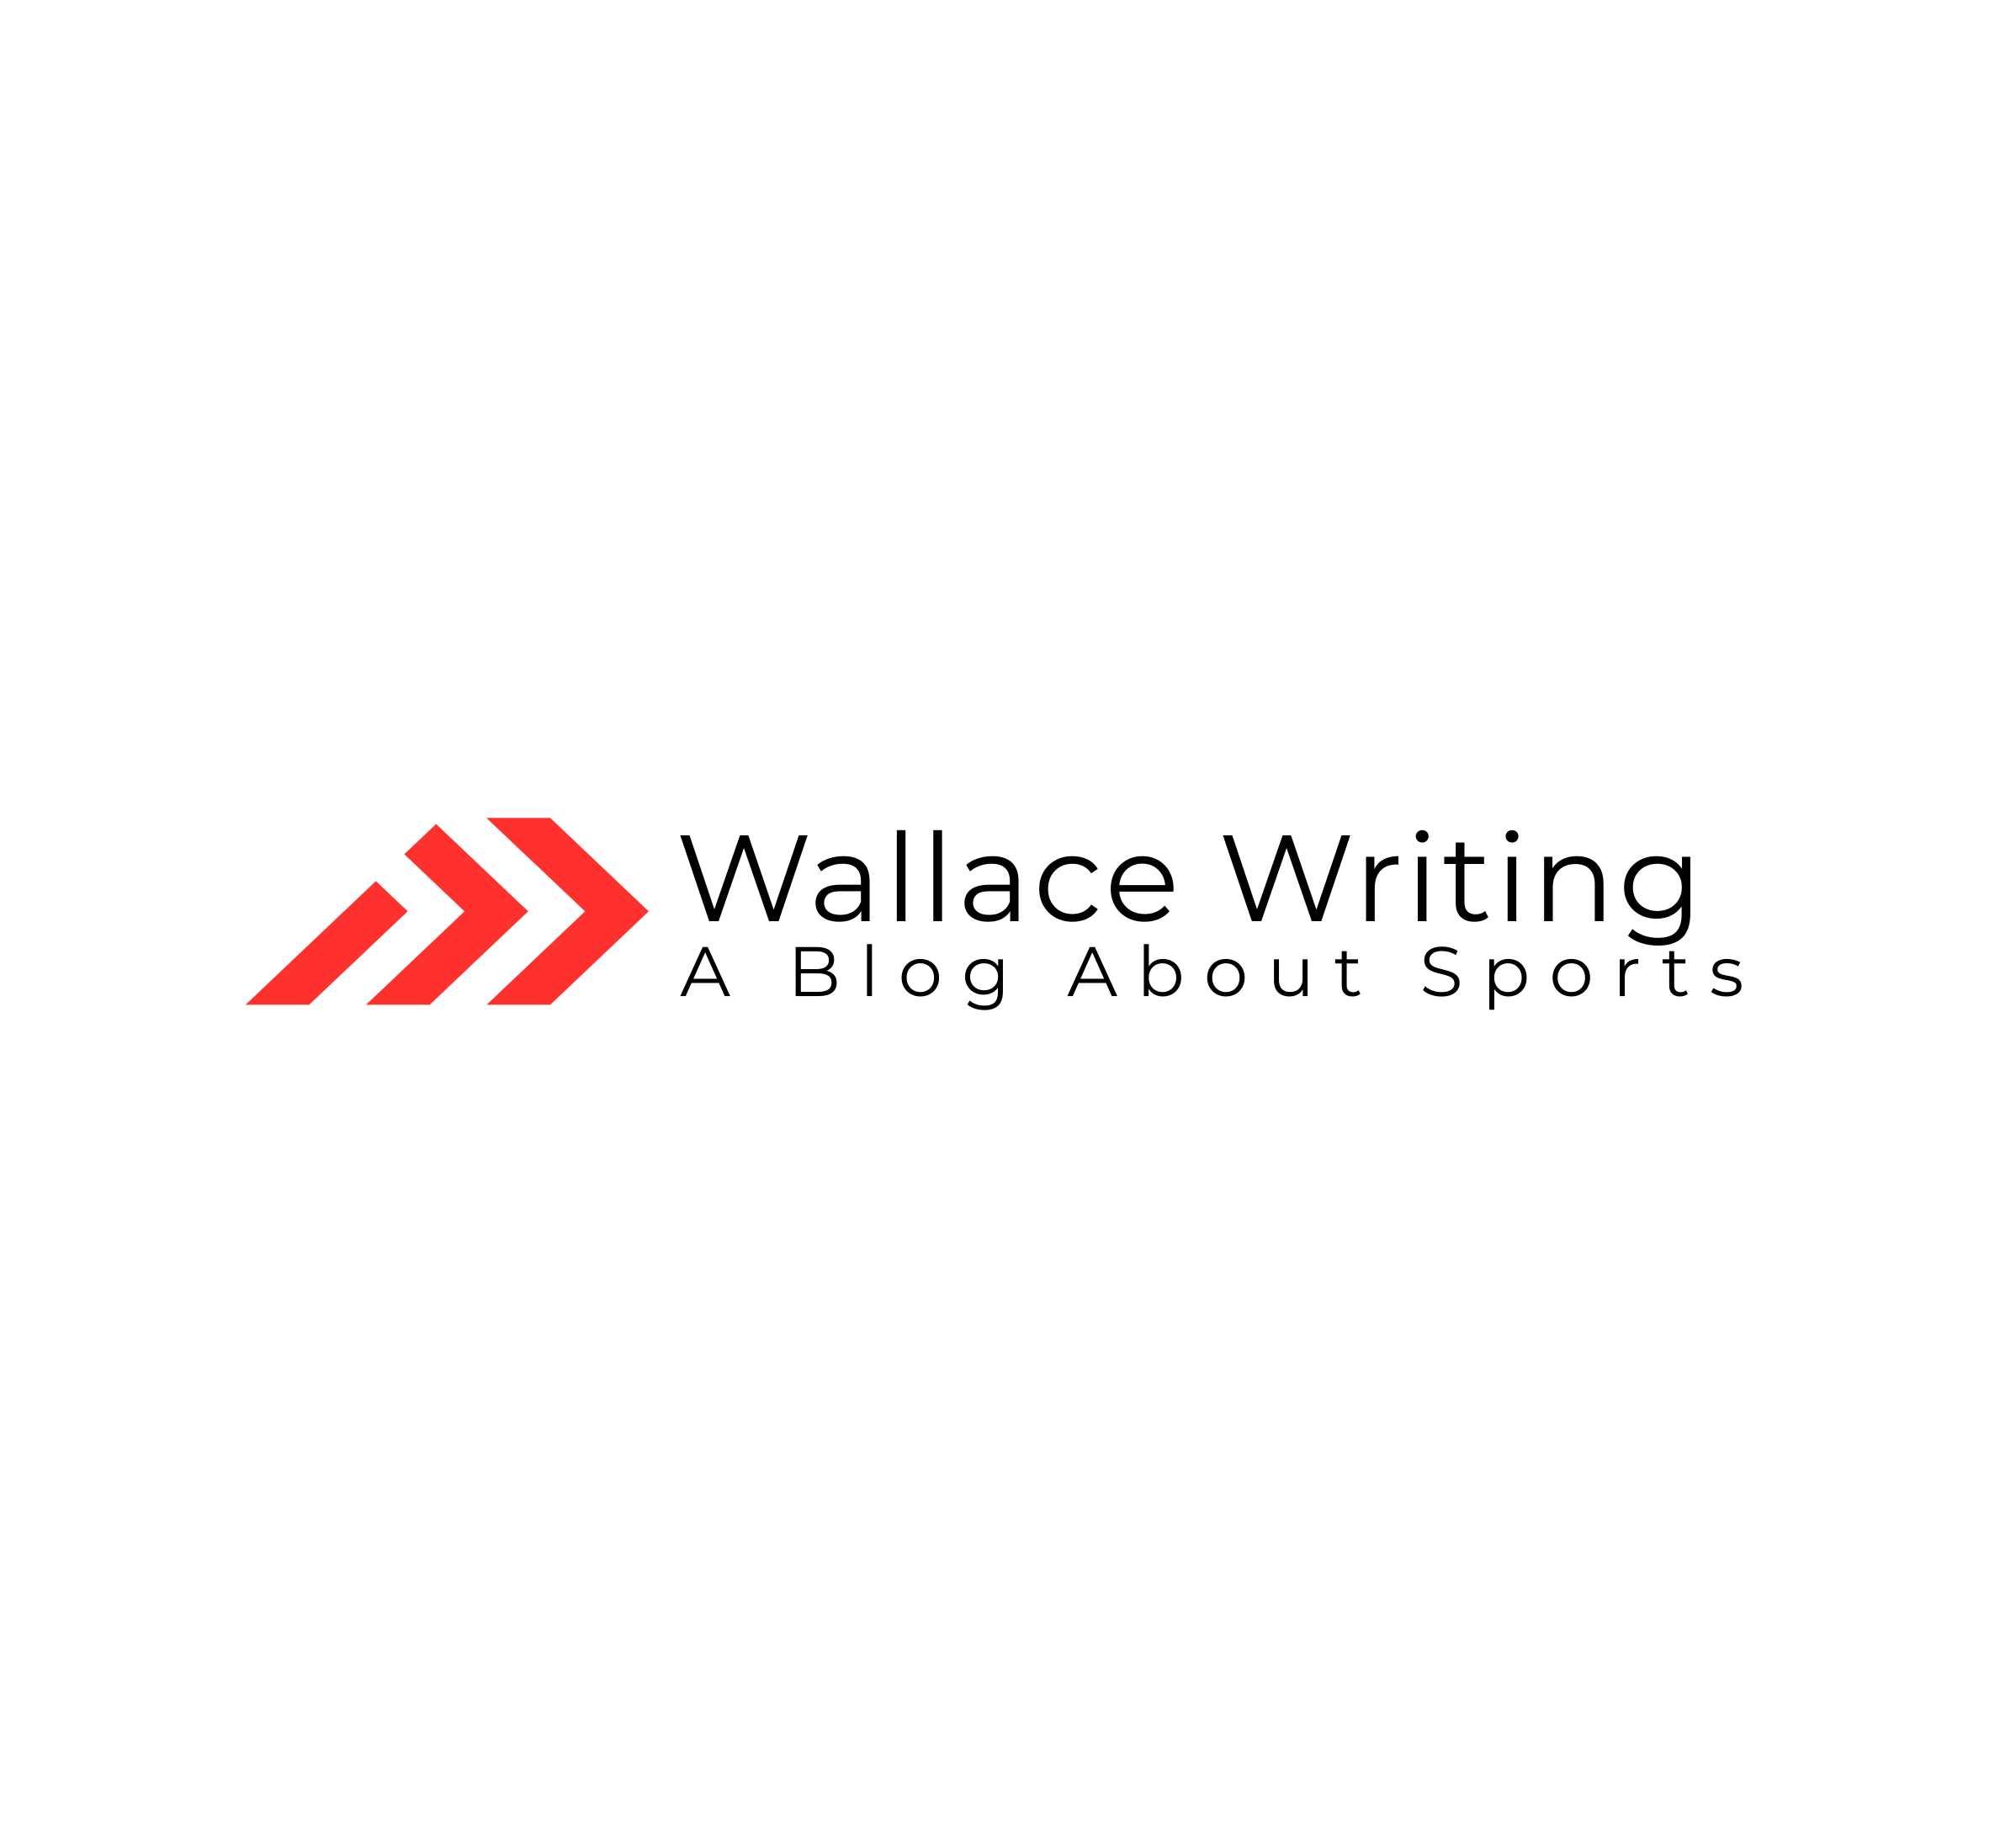 Wallace Writing